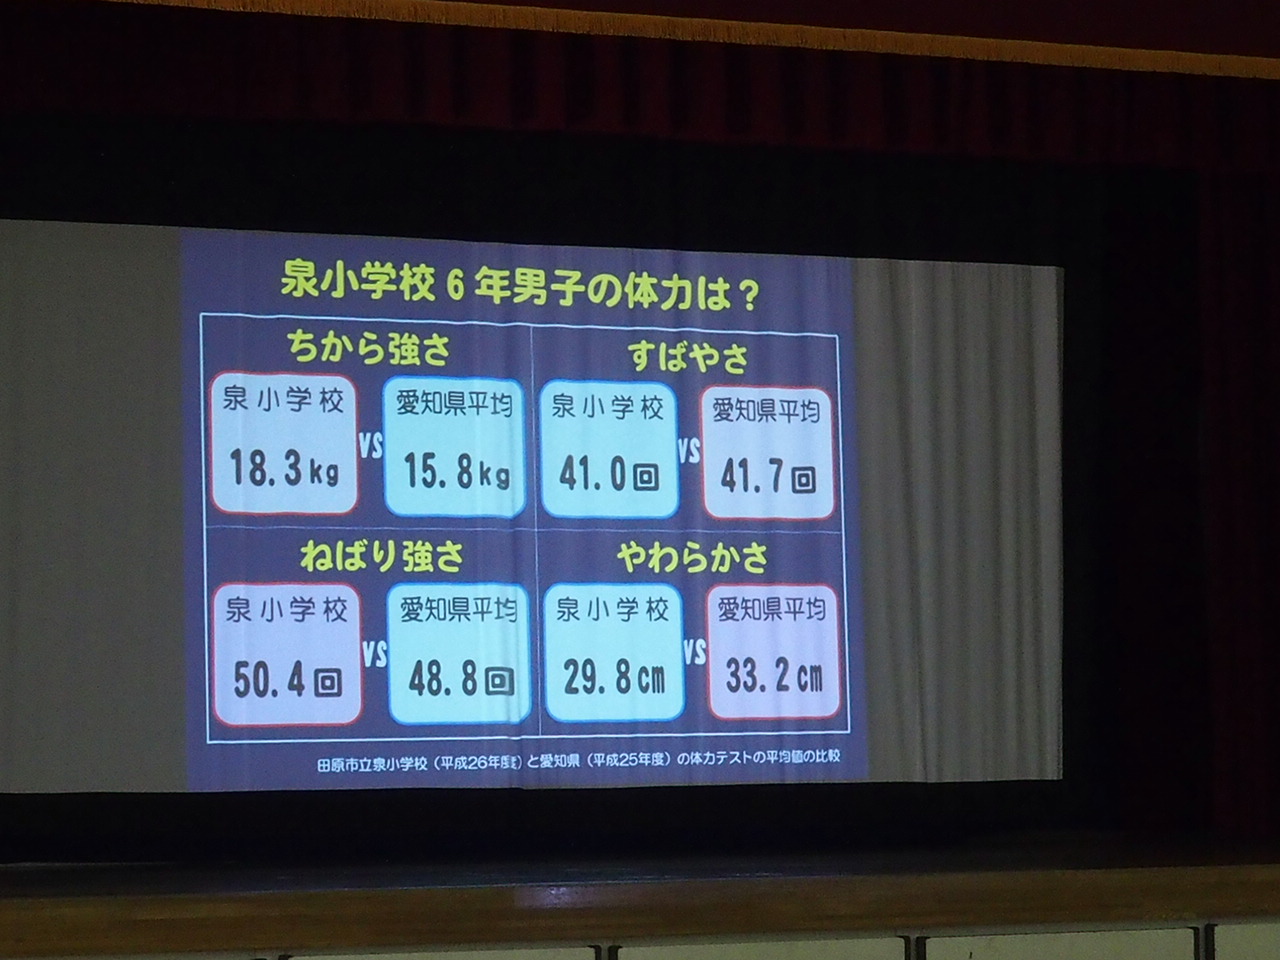 http://www.tahara.ed.jp/izumi-e/blog/140530%20%E5%AD%A6%E6%A0%A1%E4%BF%9D%E5%81%A5%E5%A7%94%E5%93%A1%E4%BC%9A04.JPG